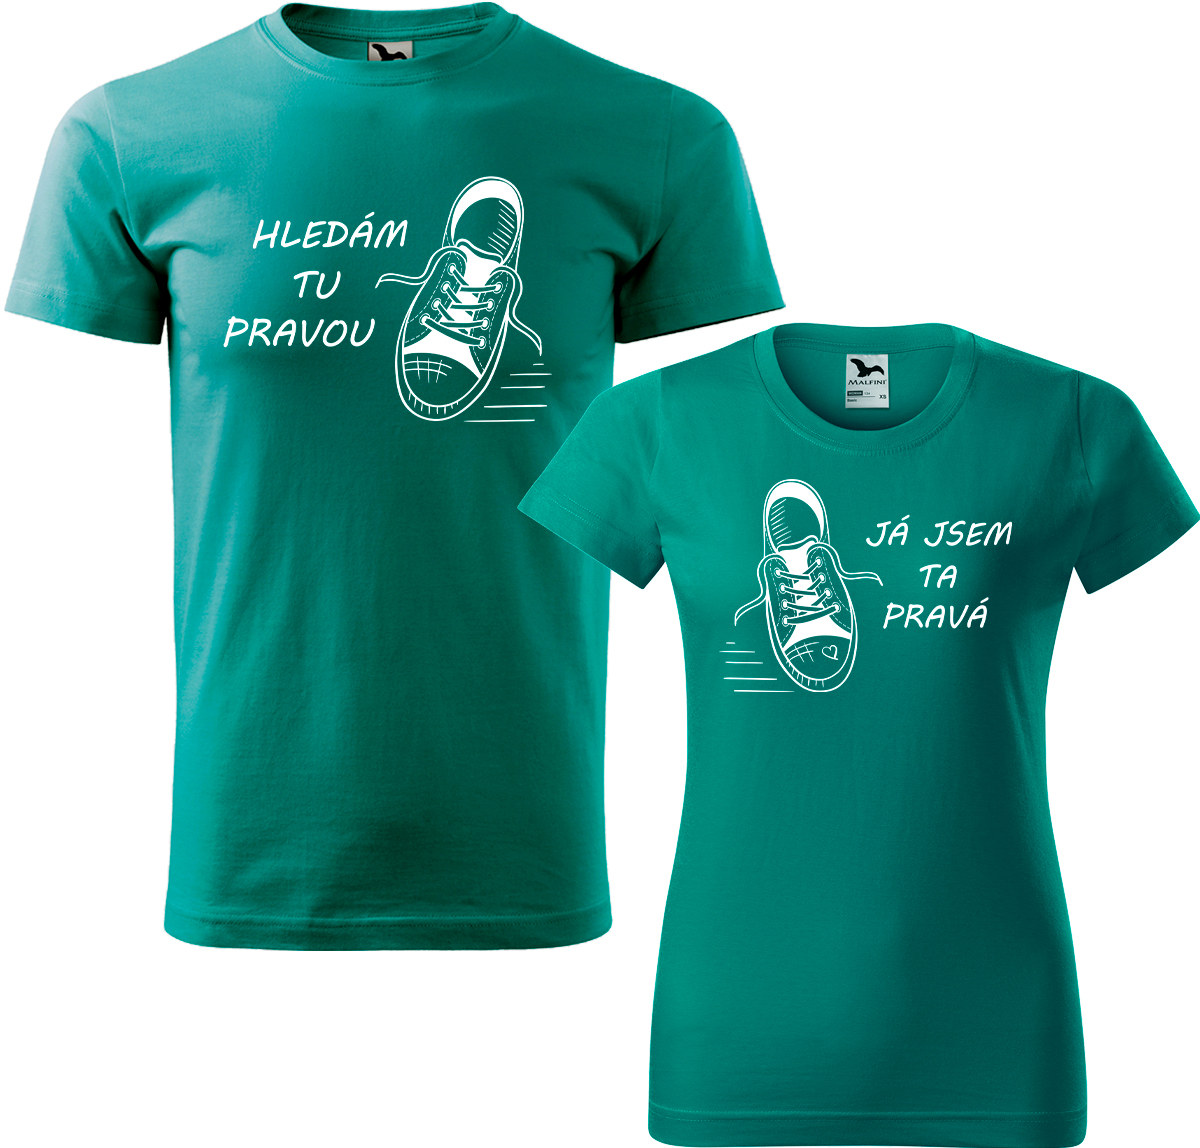 Trička pro páry - Kecky Barva: Emerald (19), Velikost dámské tričko: 3XL, Velikost pánské tričko: 4XL